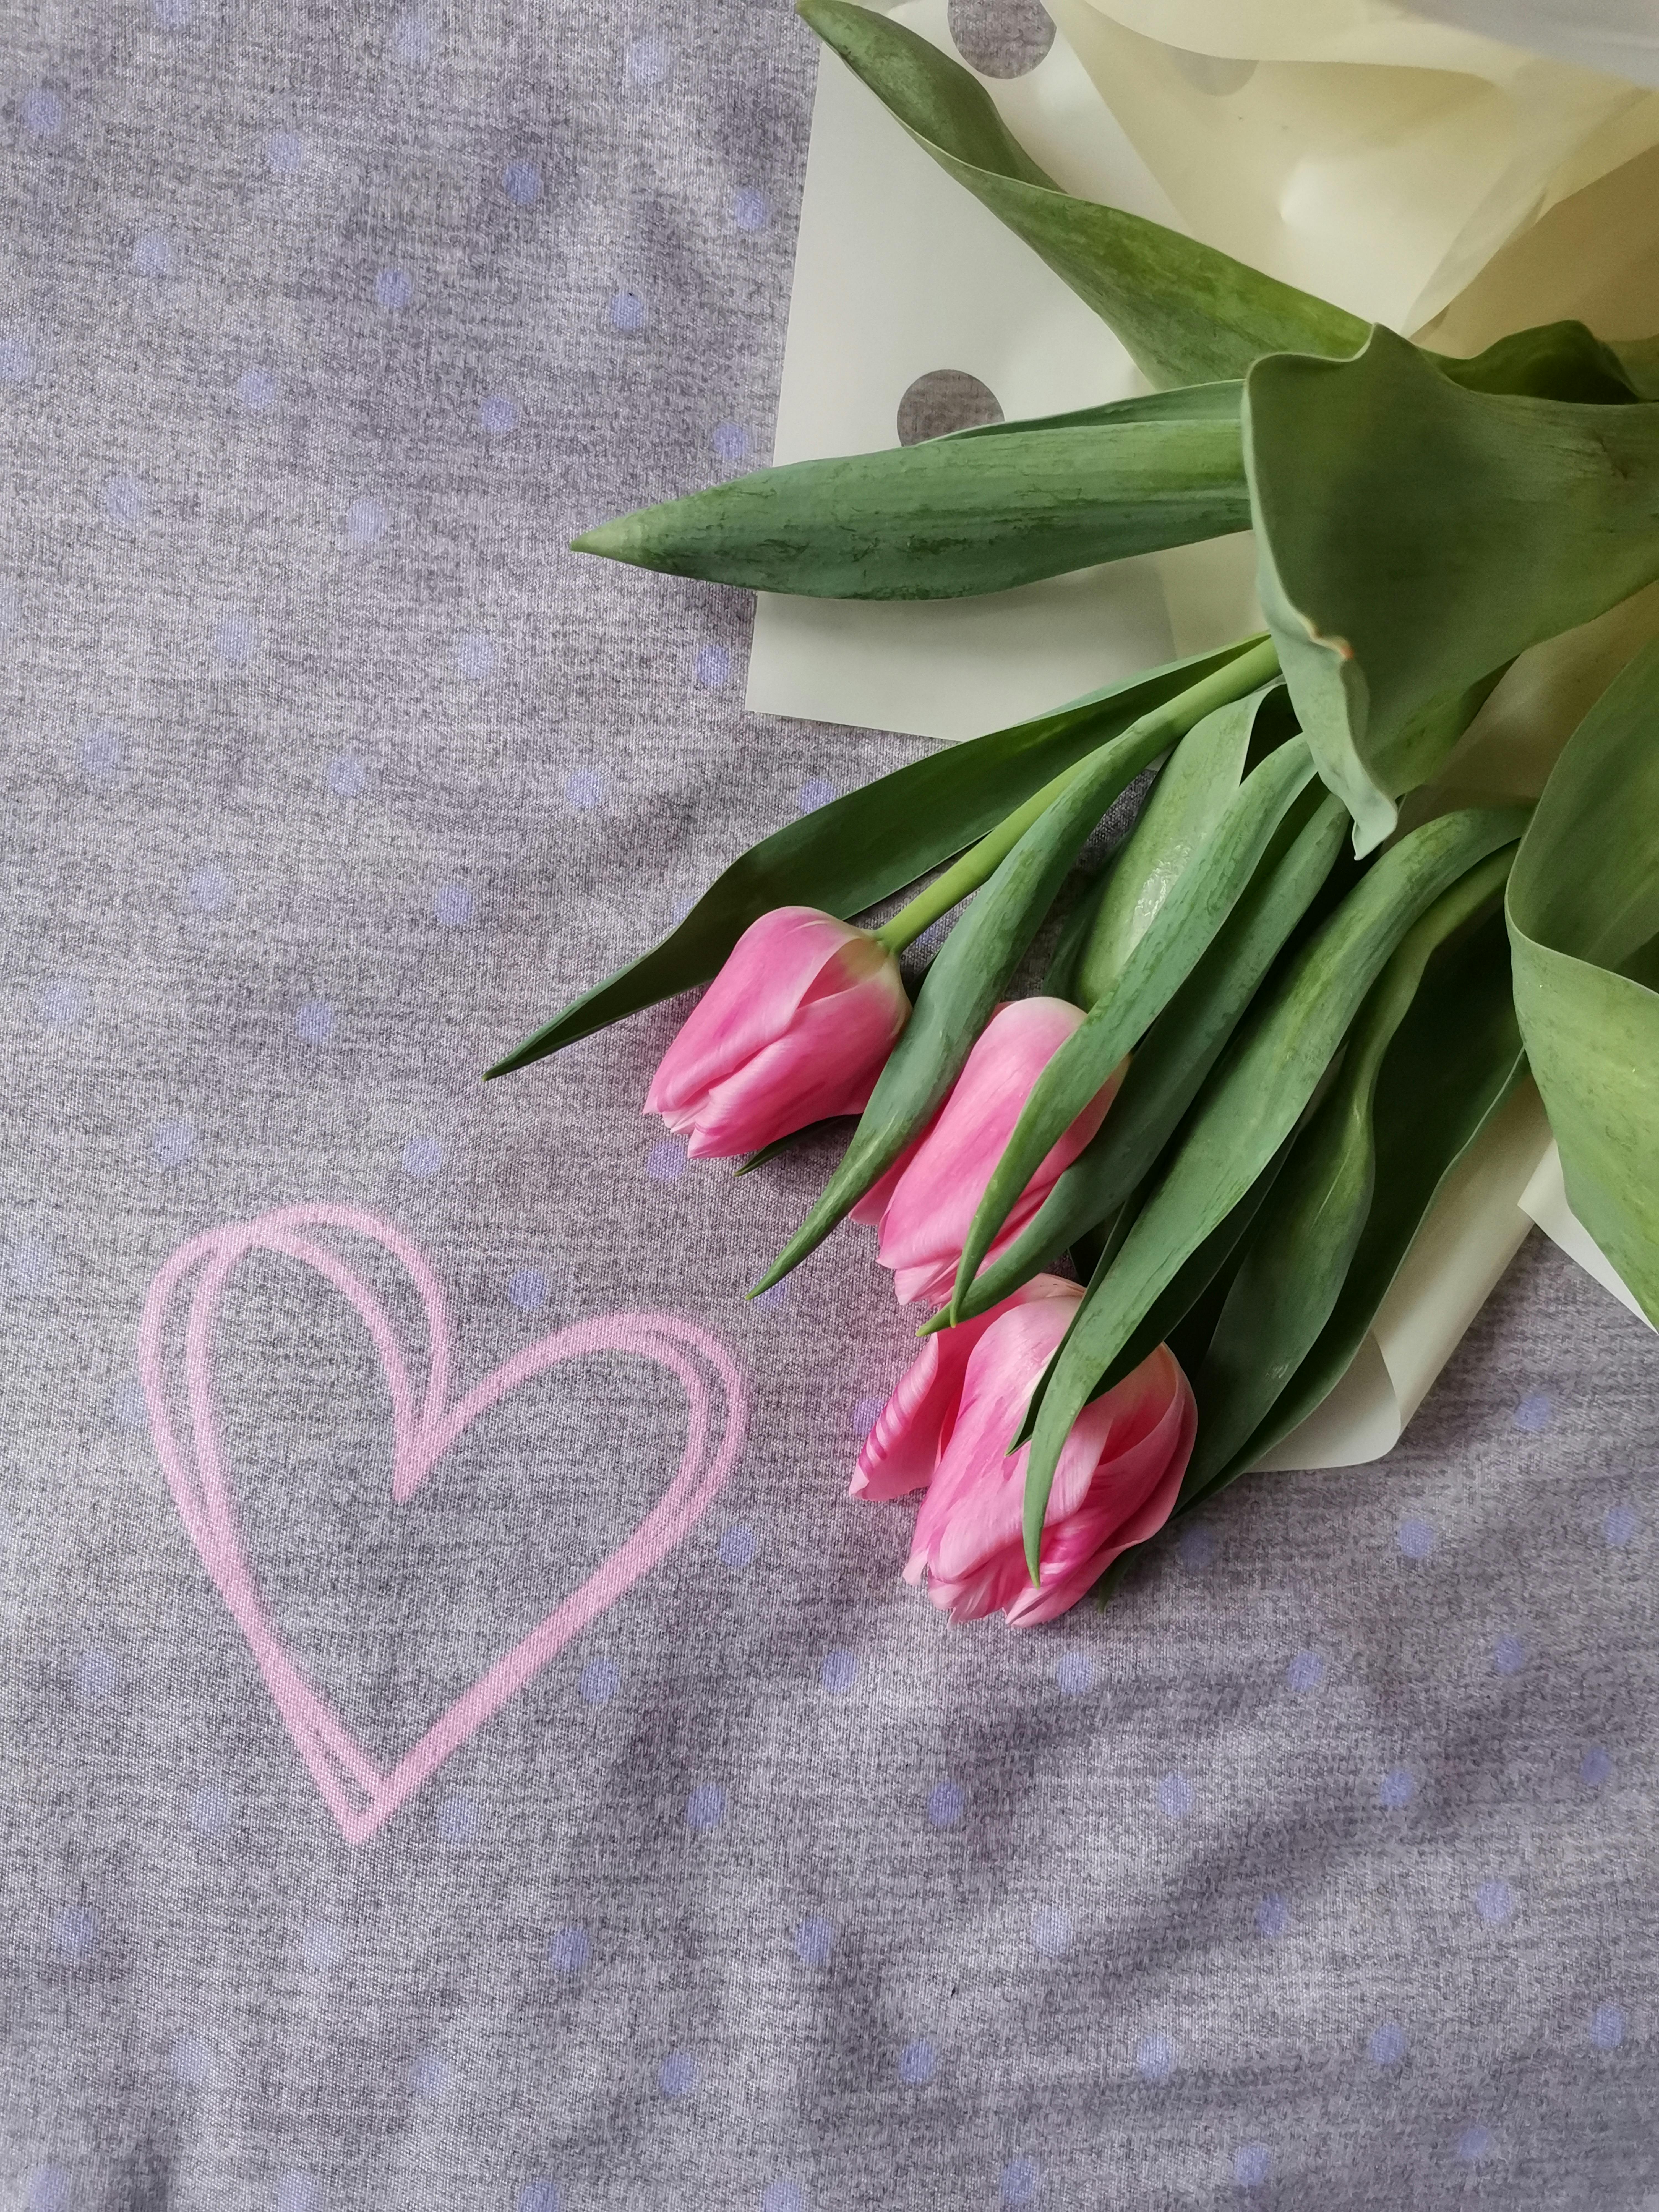 Hoa tulip tím là một trong những loại hoa đẹp nhất với màu sắc rực rỡ và thanh lịch. Hãy chiêm ngưỡng hình ảnh của những bông hoa tulip tím này và cảm nhận sự đẹp của chúng.